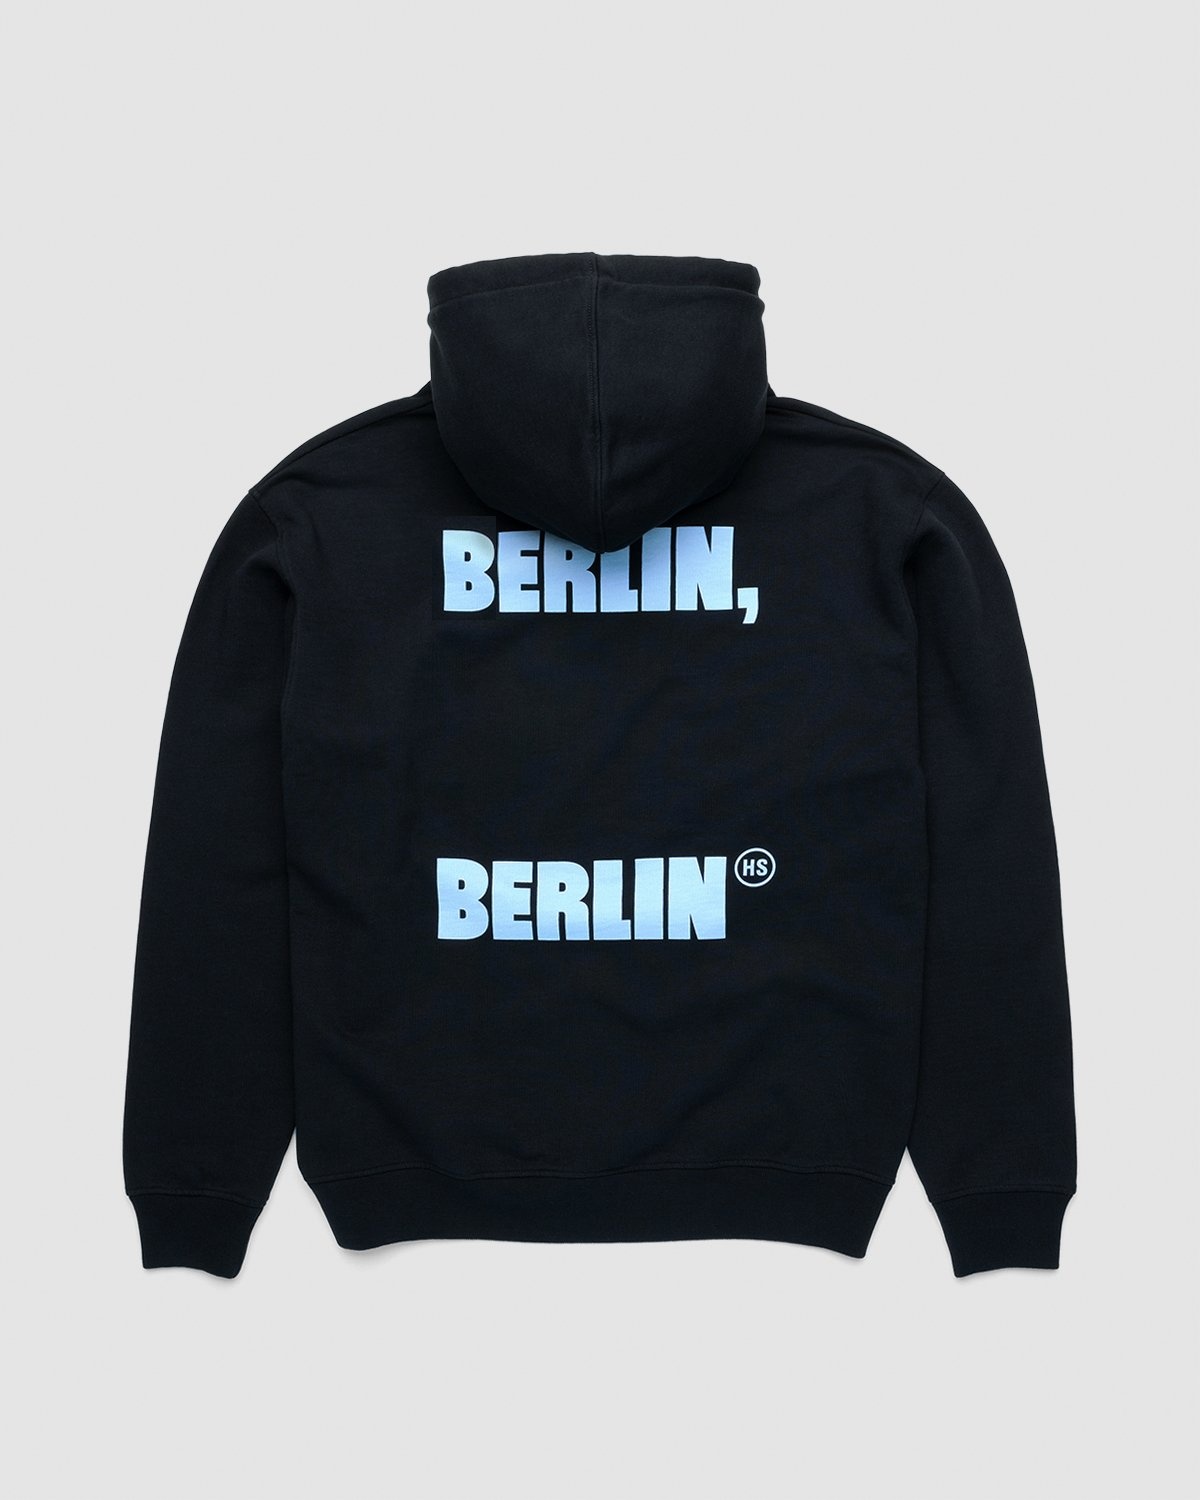 Highsnobiety – Berlin Berlin 2 Hoodie Black - Hoodies - Black - Image 1